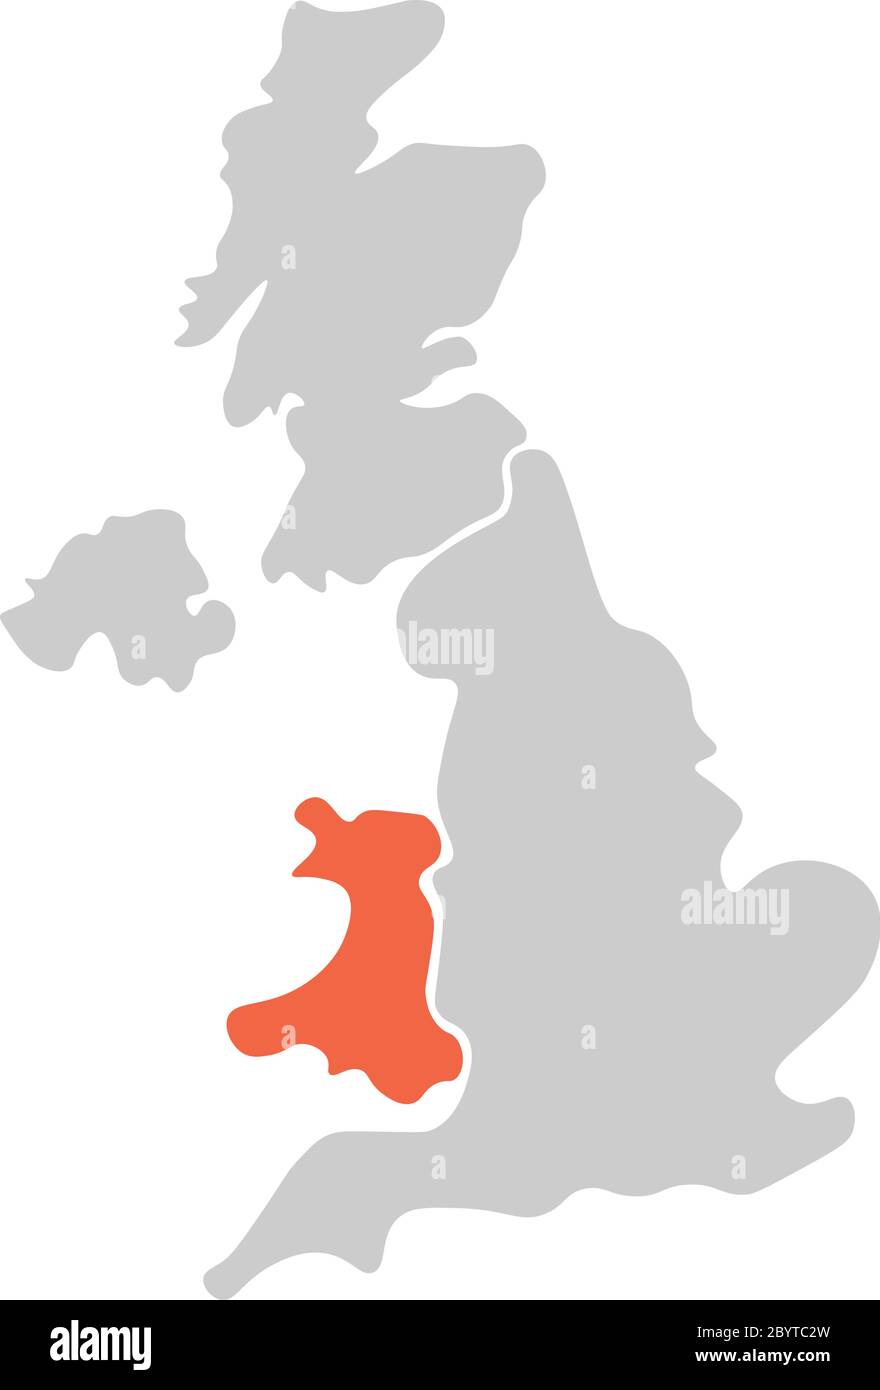 Mappa vuota semplificata disegnata a mano del Regno Unito di Gran Bretagna e Irlanda del Nord, Regno Unito. Diviso in quattro paesi con il Galles rosso evidenziato. Semplice illustrazione vettoriale piatta. Illustrazione Vettoriale